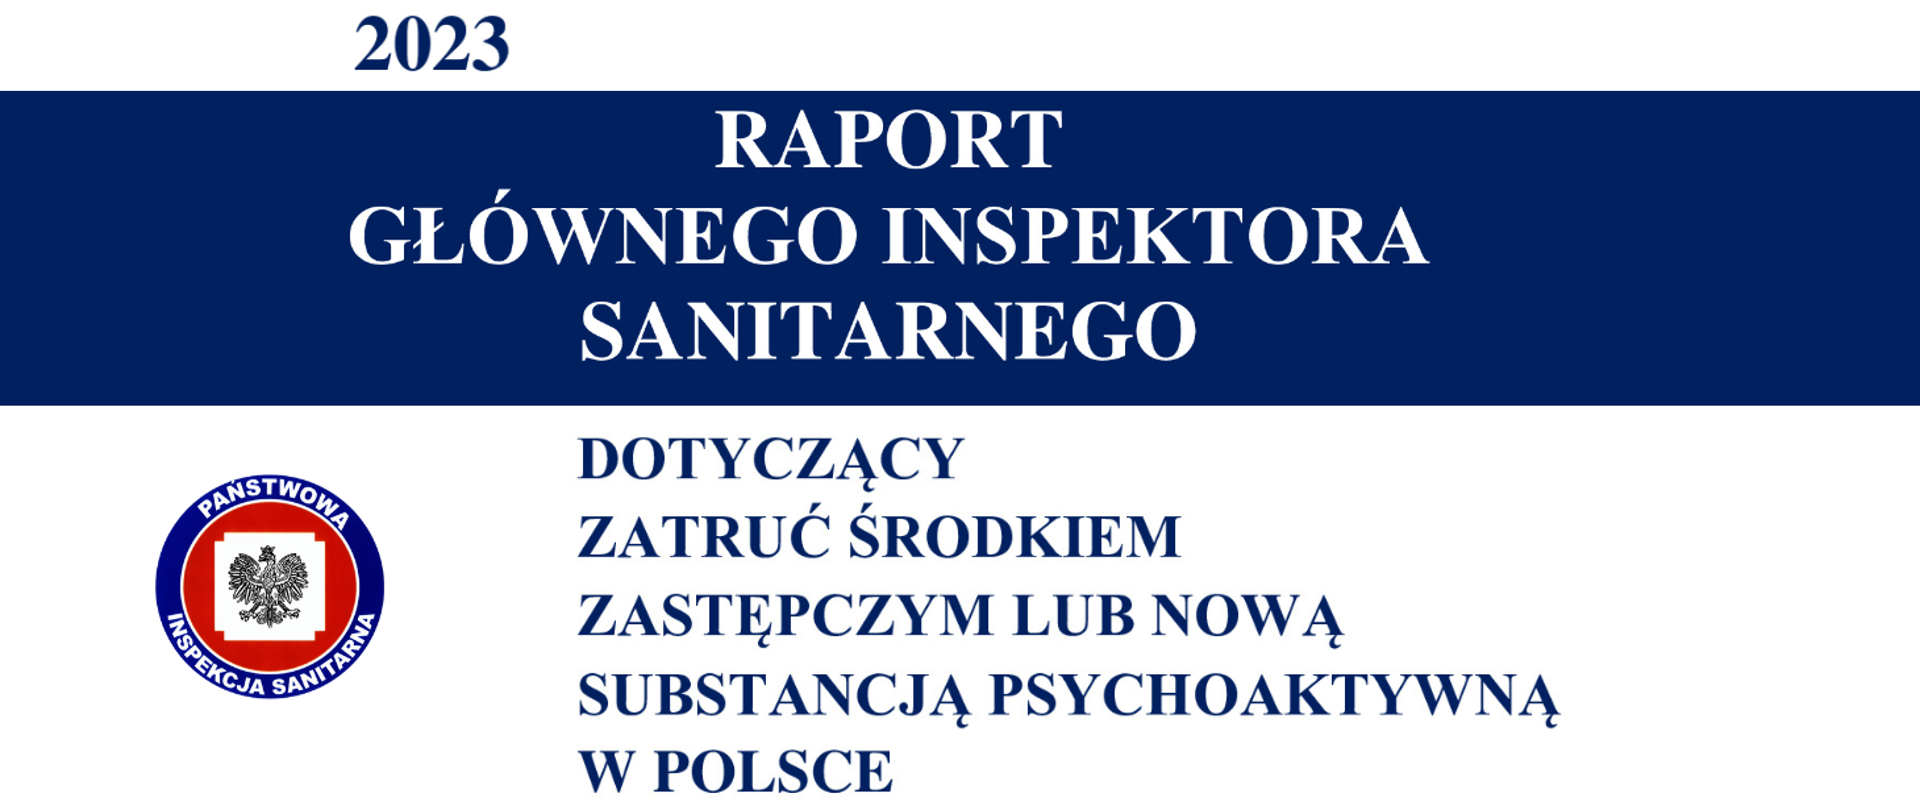 Raport Głównego Inspektora Sanitarnego dotyczący zatruć środkiem zastępczym lub nową substancją psychoaktywną w Polsce za 2023 rok